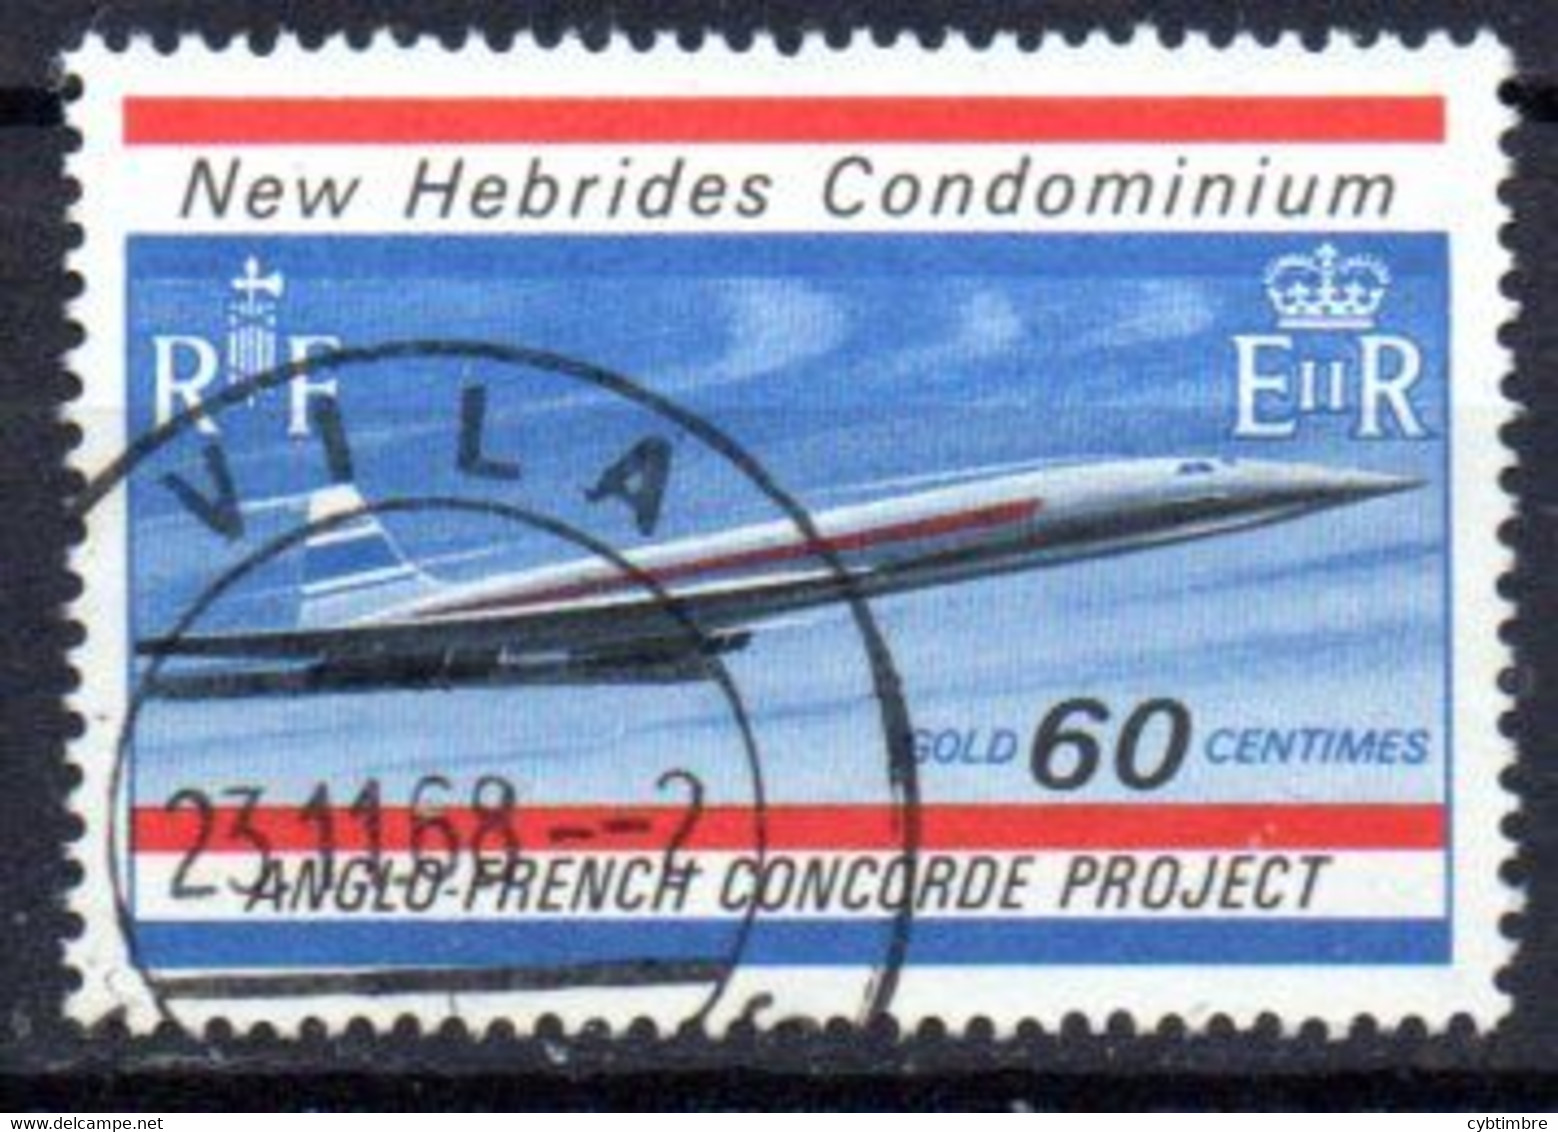 Nouvelles Hébrides: Yvert N° 279; Concorde; Oblitération Choisie!!! - Oblitérés